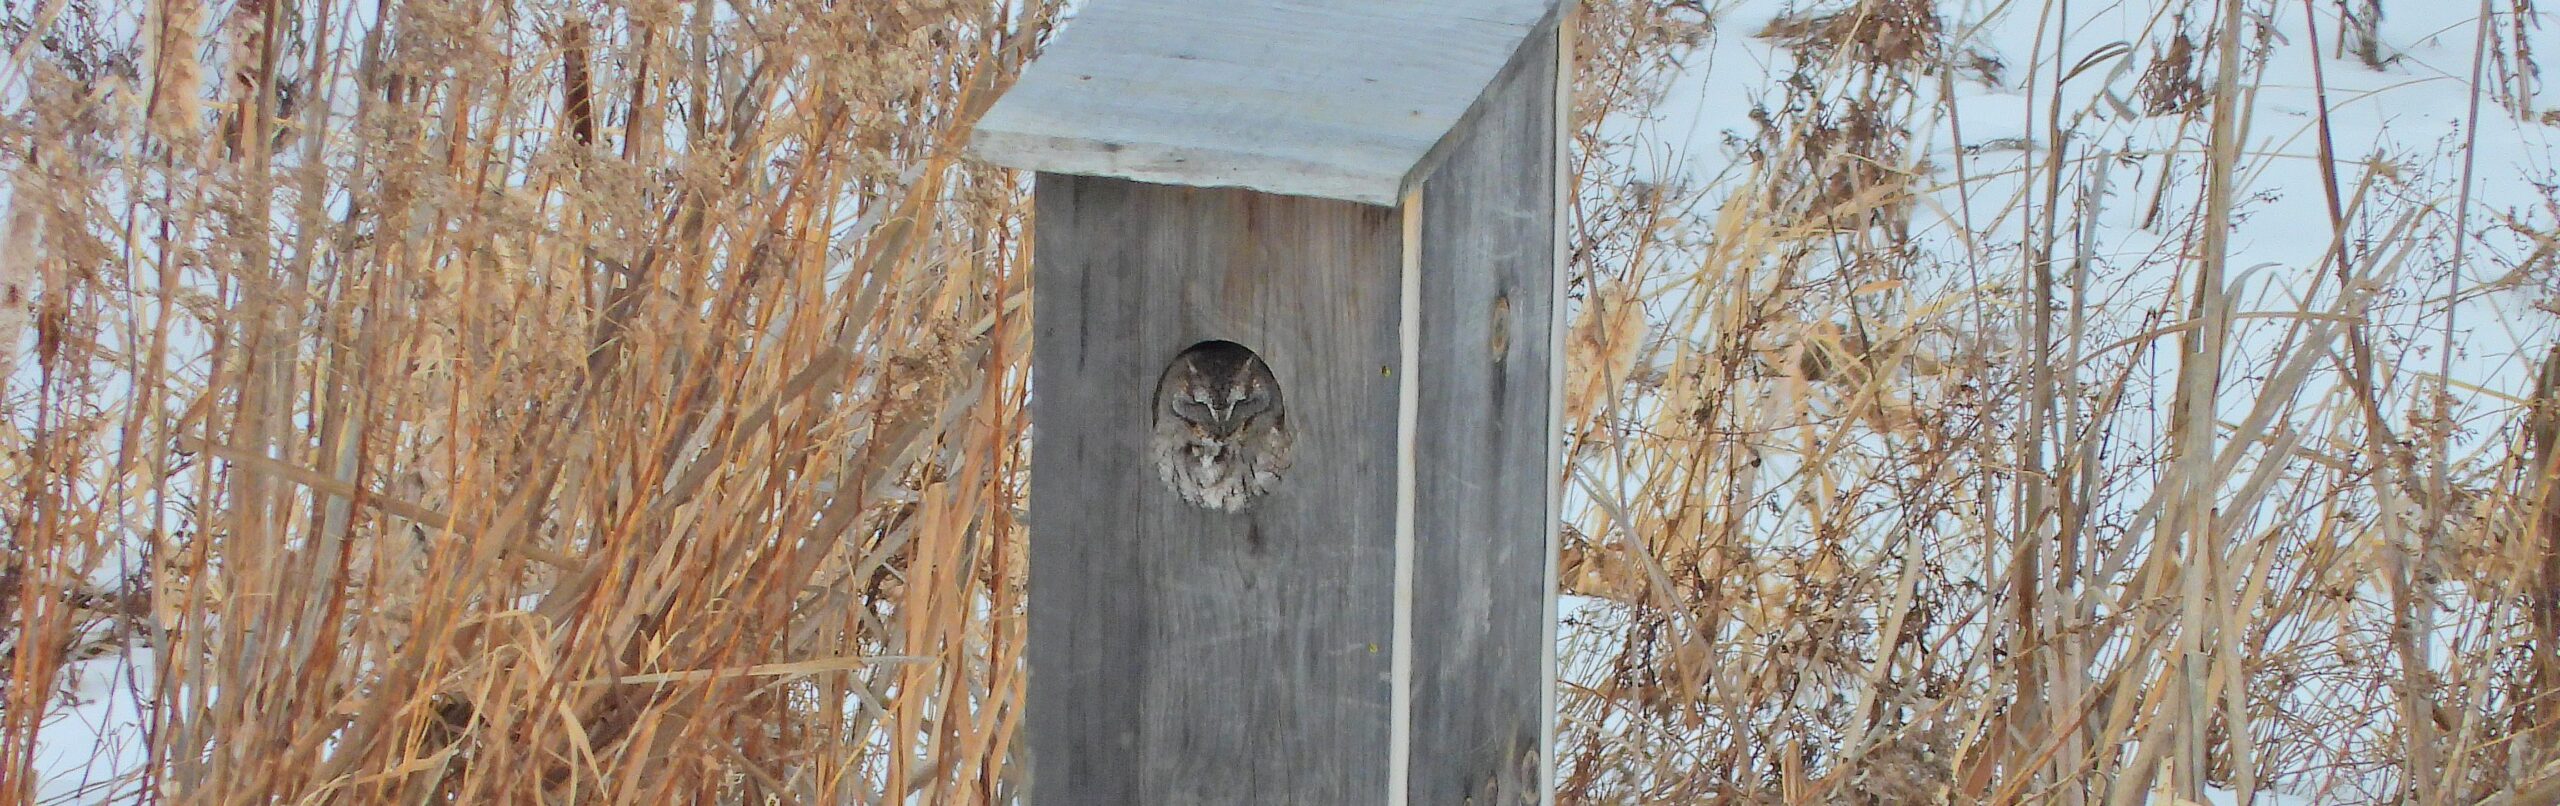 Eastern Screech Owl in Wood Duck box.